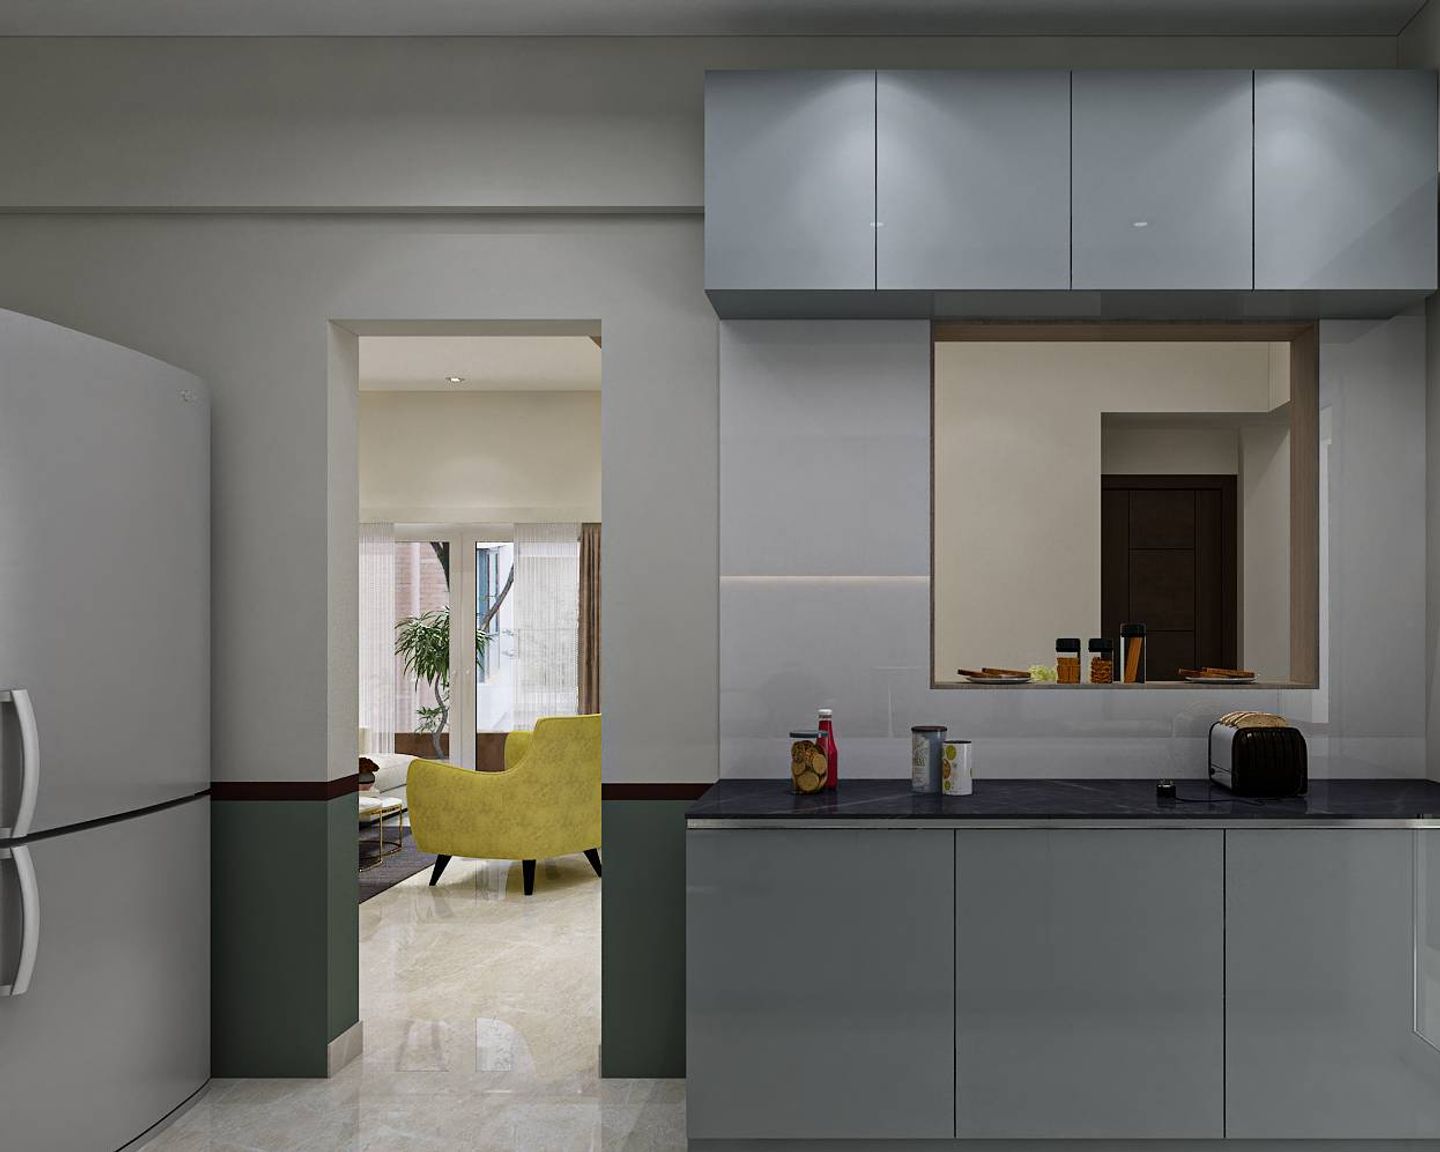 Modern Parallel Kitchen Interior Design With Strip Lighting